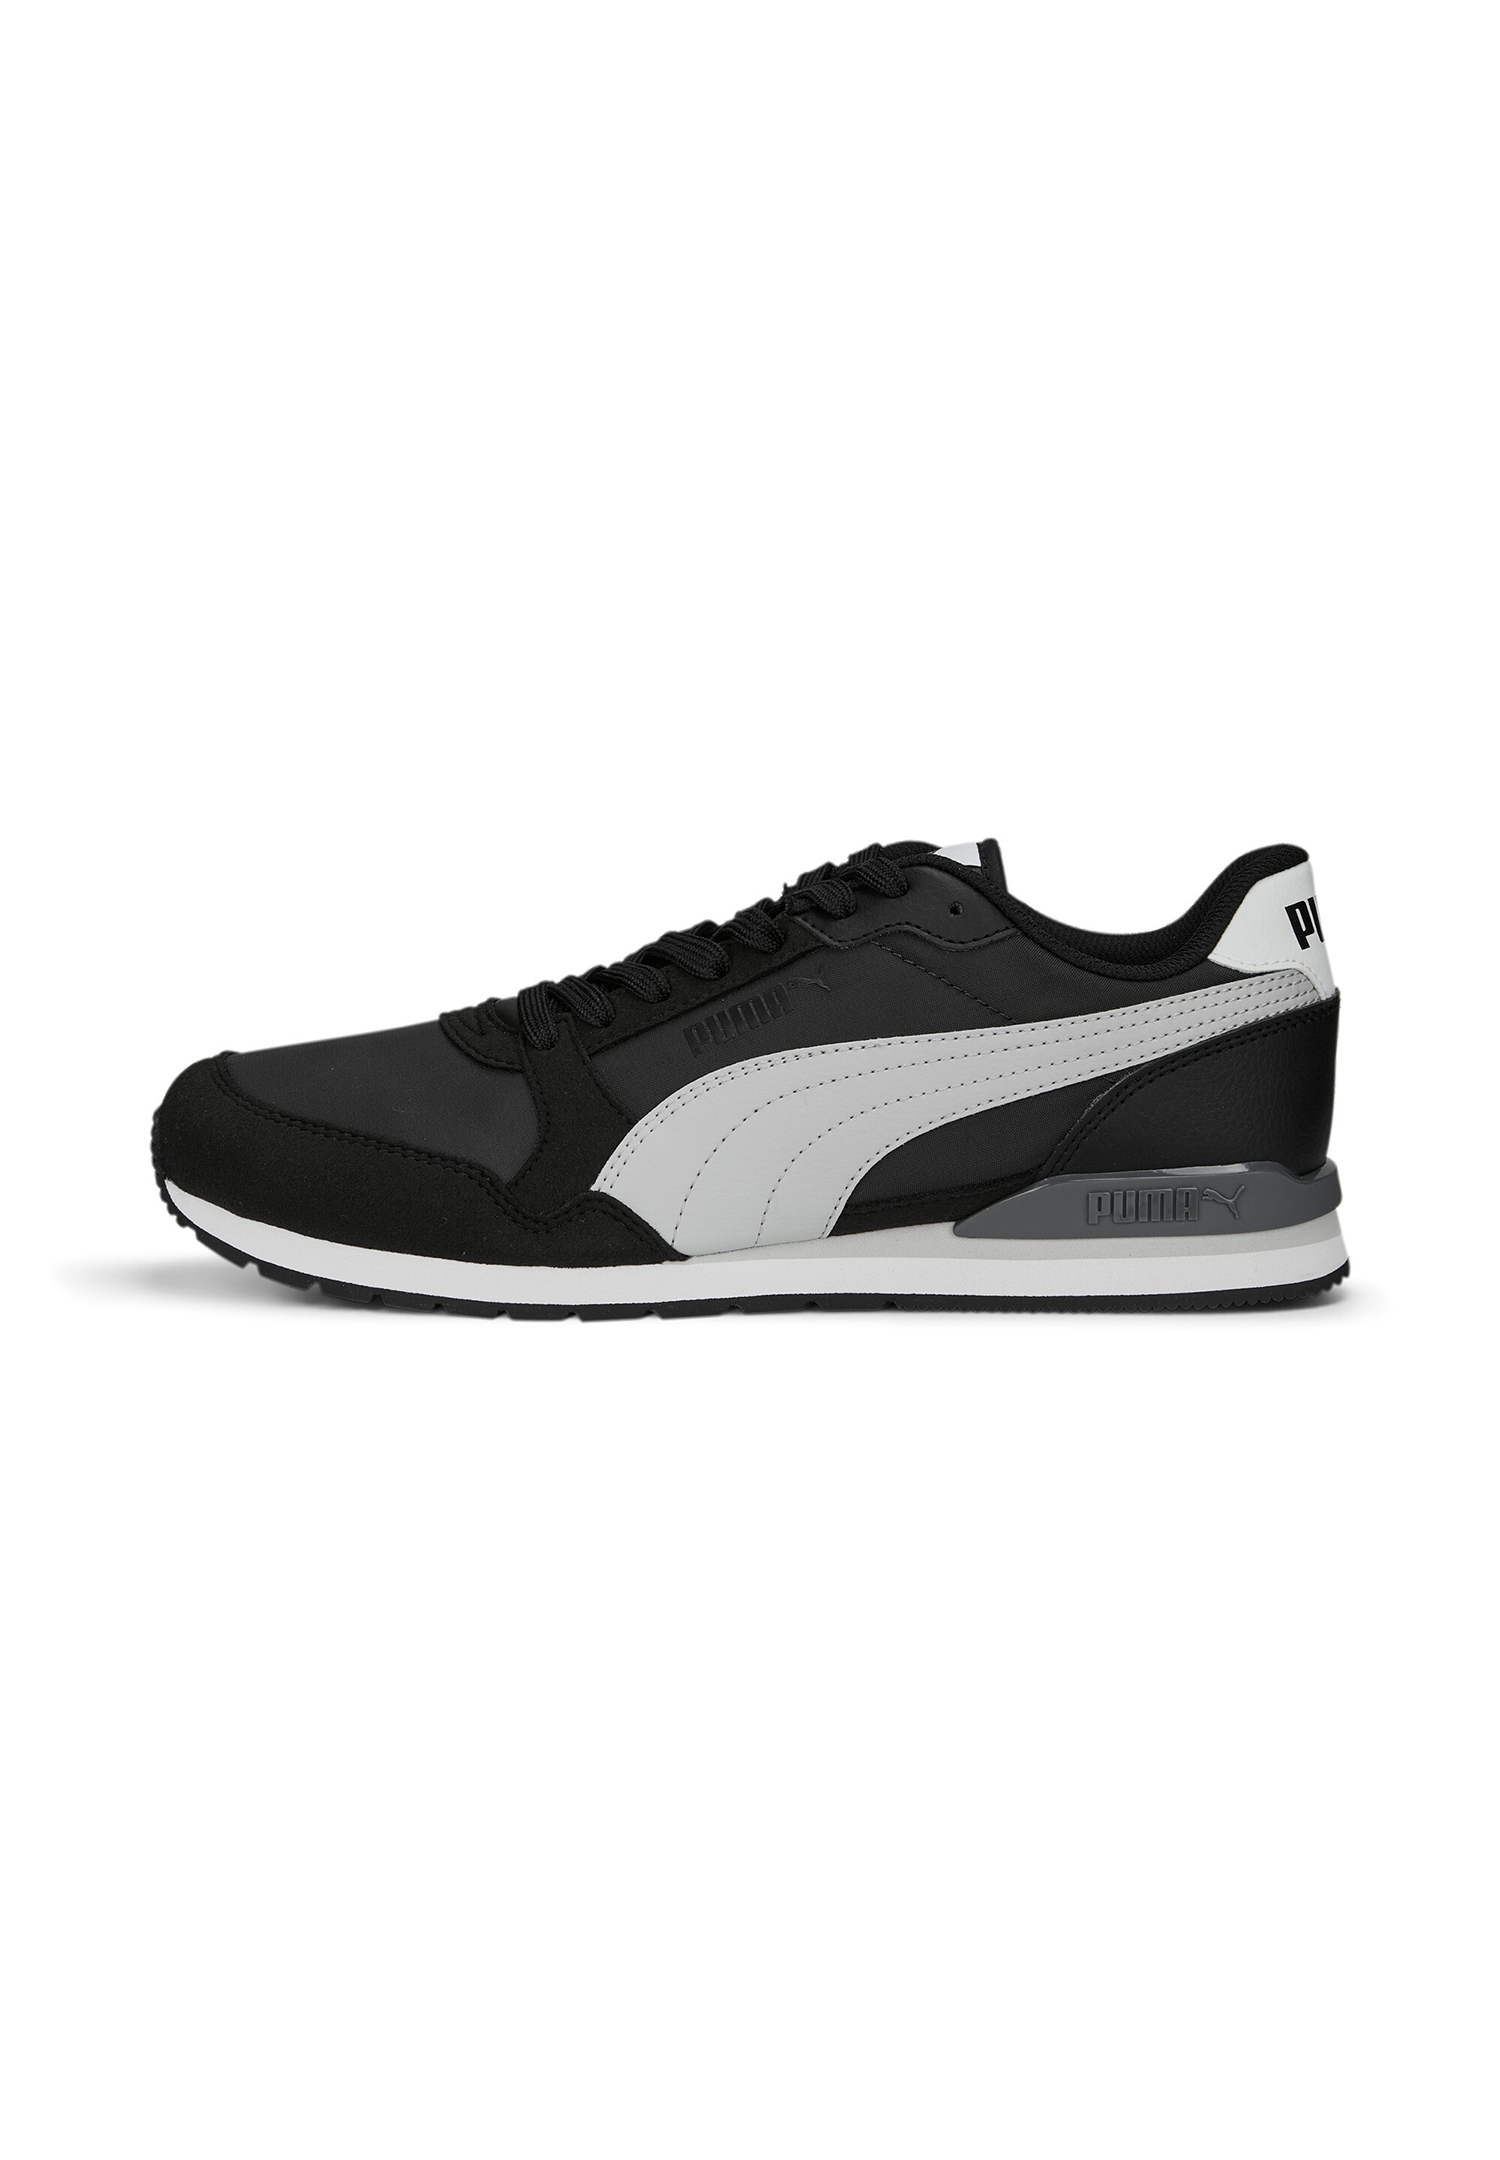 Puma ST Runner V3 NL Unisex Sneaker Turnschuhe 384857 schwarz